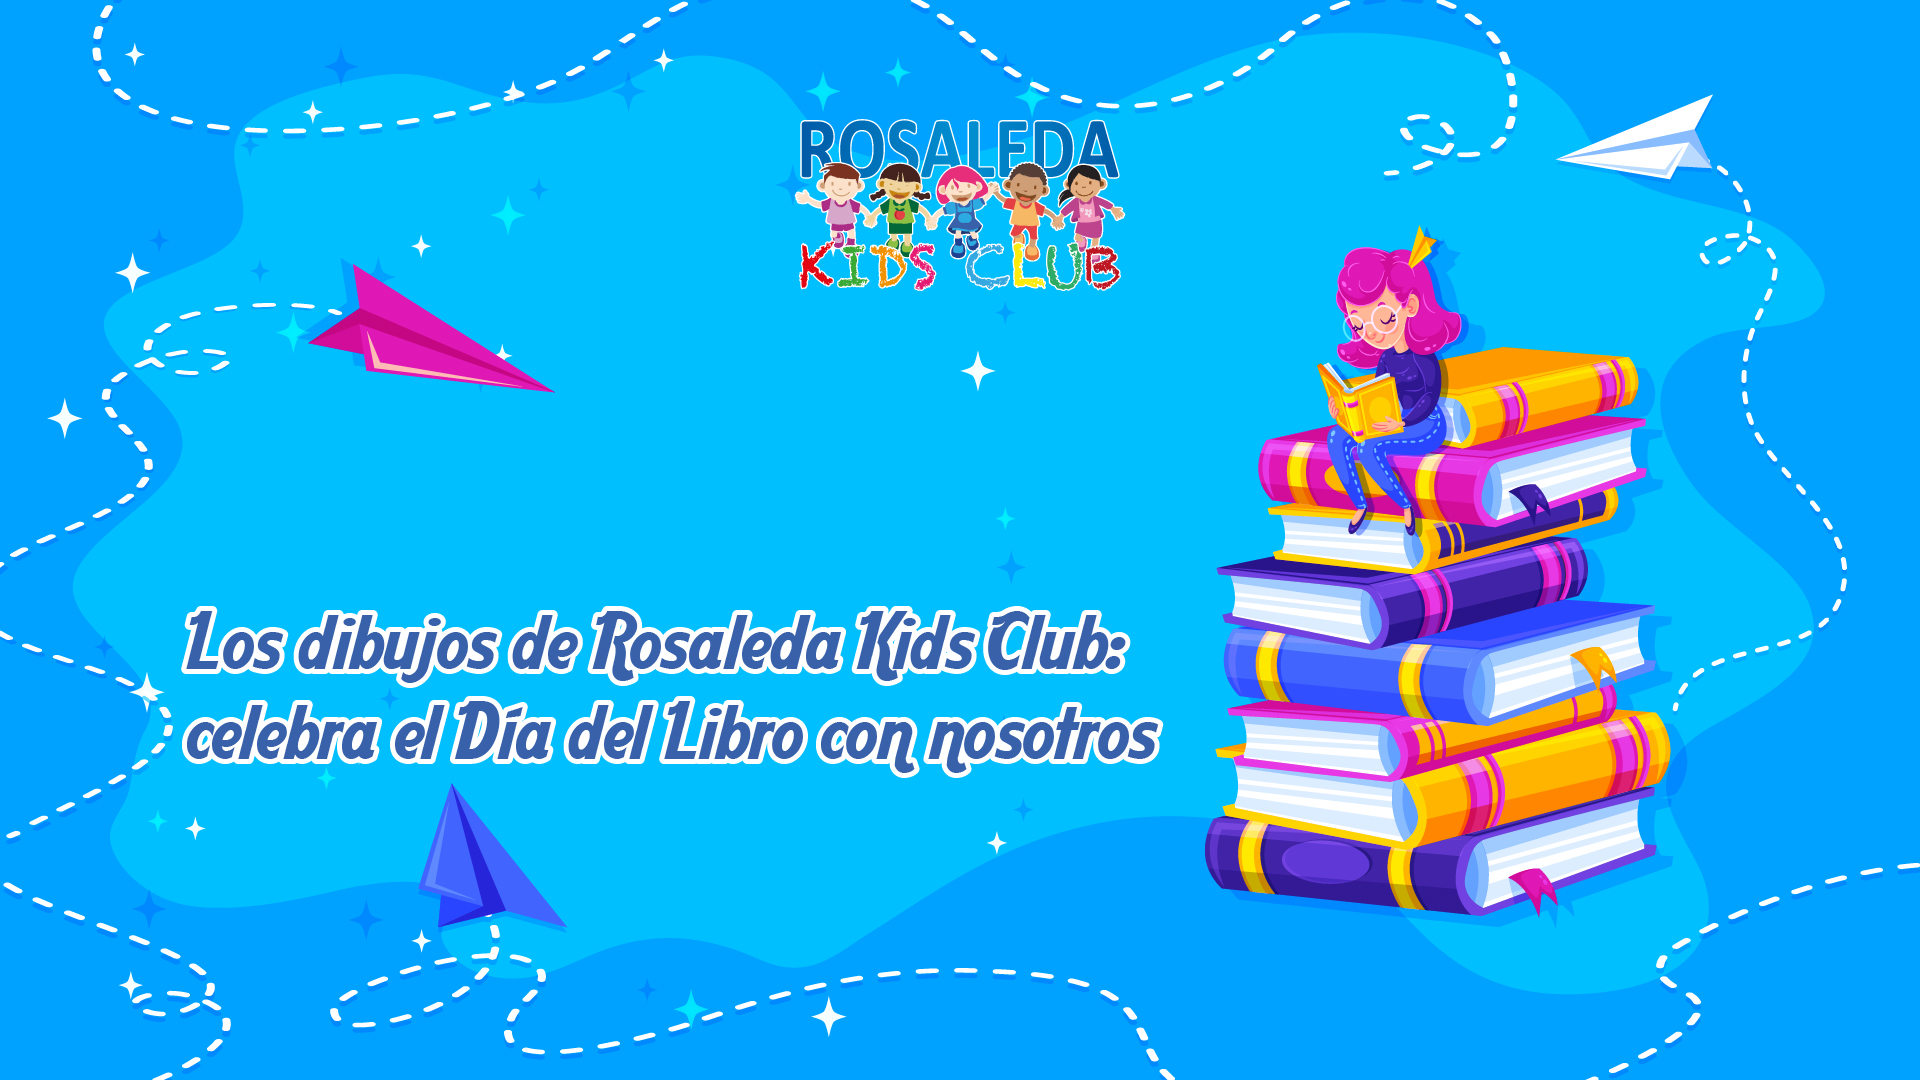 Los dibujos de Rosaleda Kids Club celebra el Día del Libro con nosotros